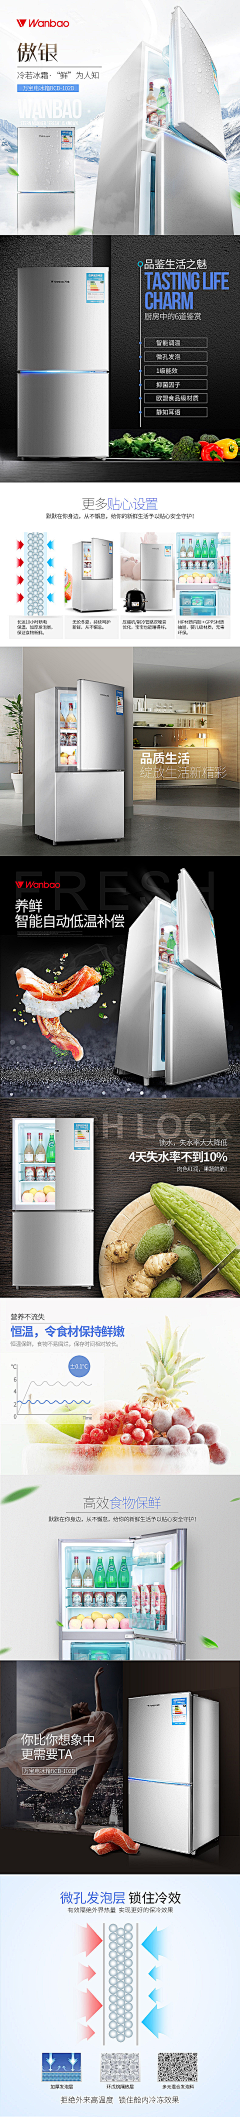 kHD0lAeK采集到产品展示-冰箱